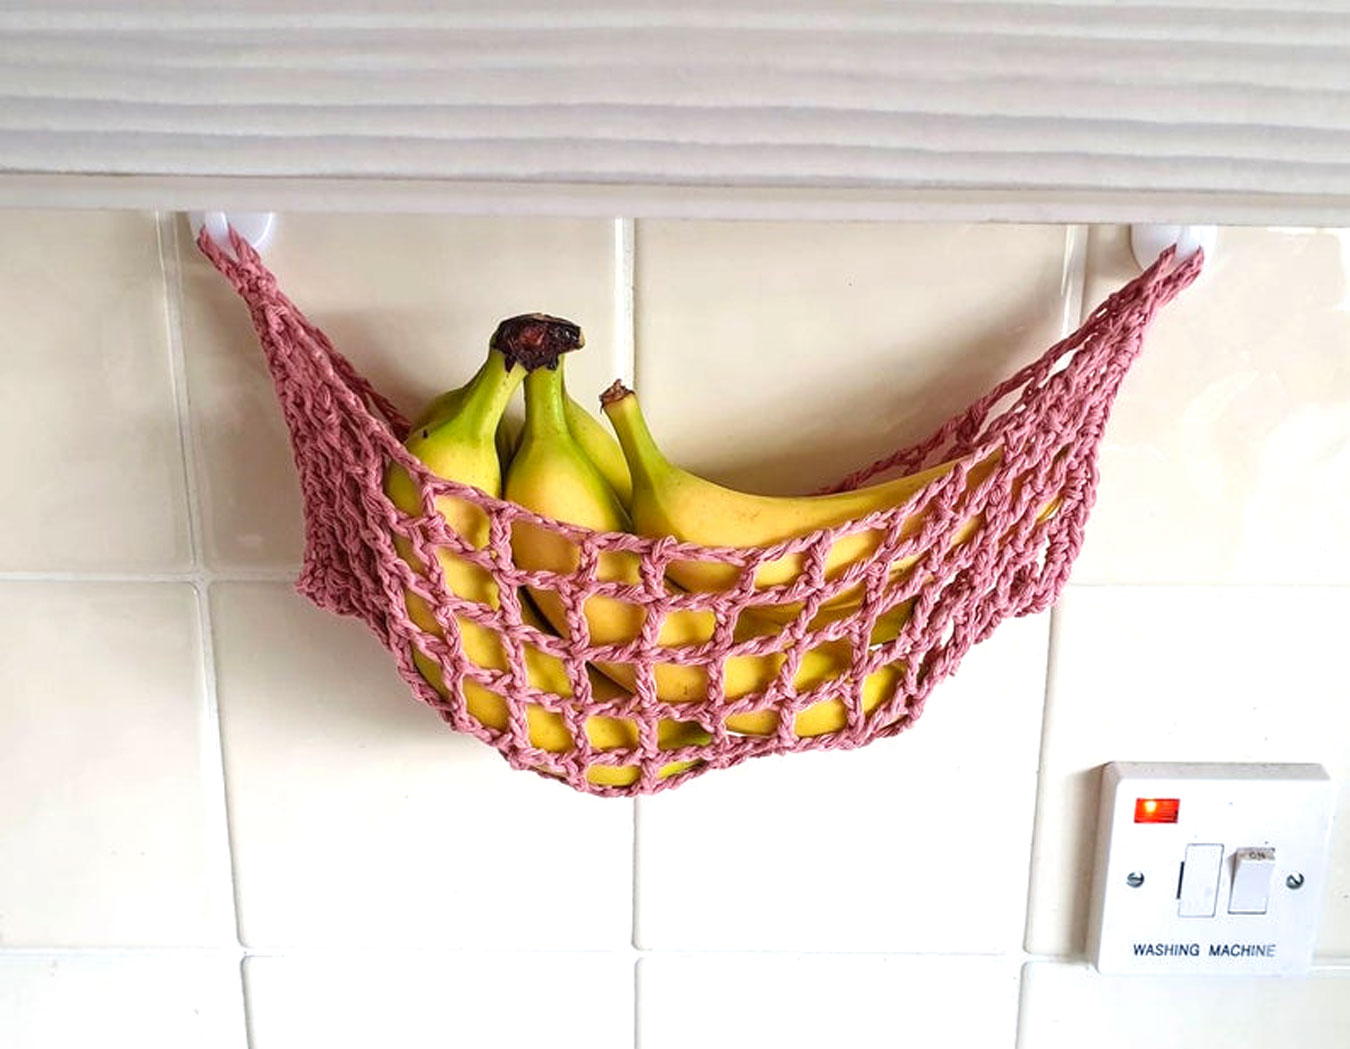 Sistemare la frutta in cucina con questa rete sospesa con banane.